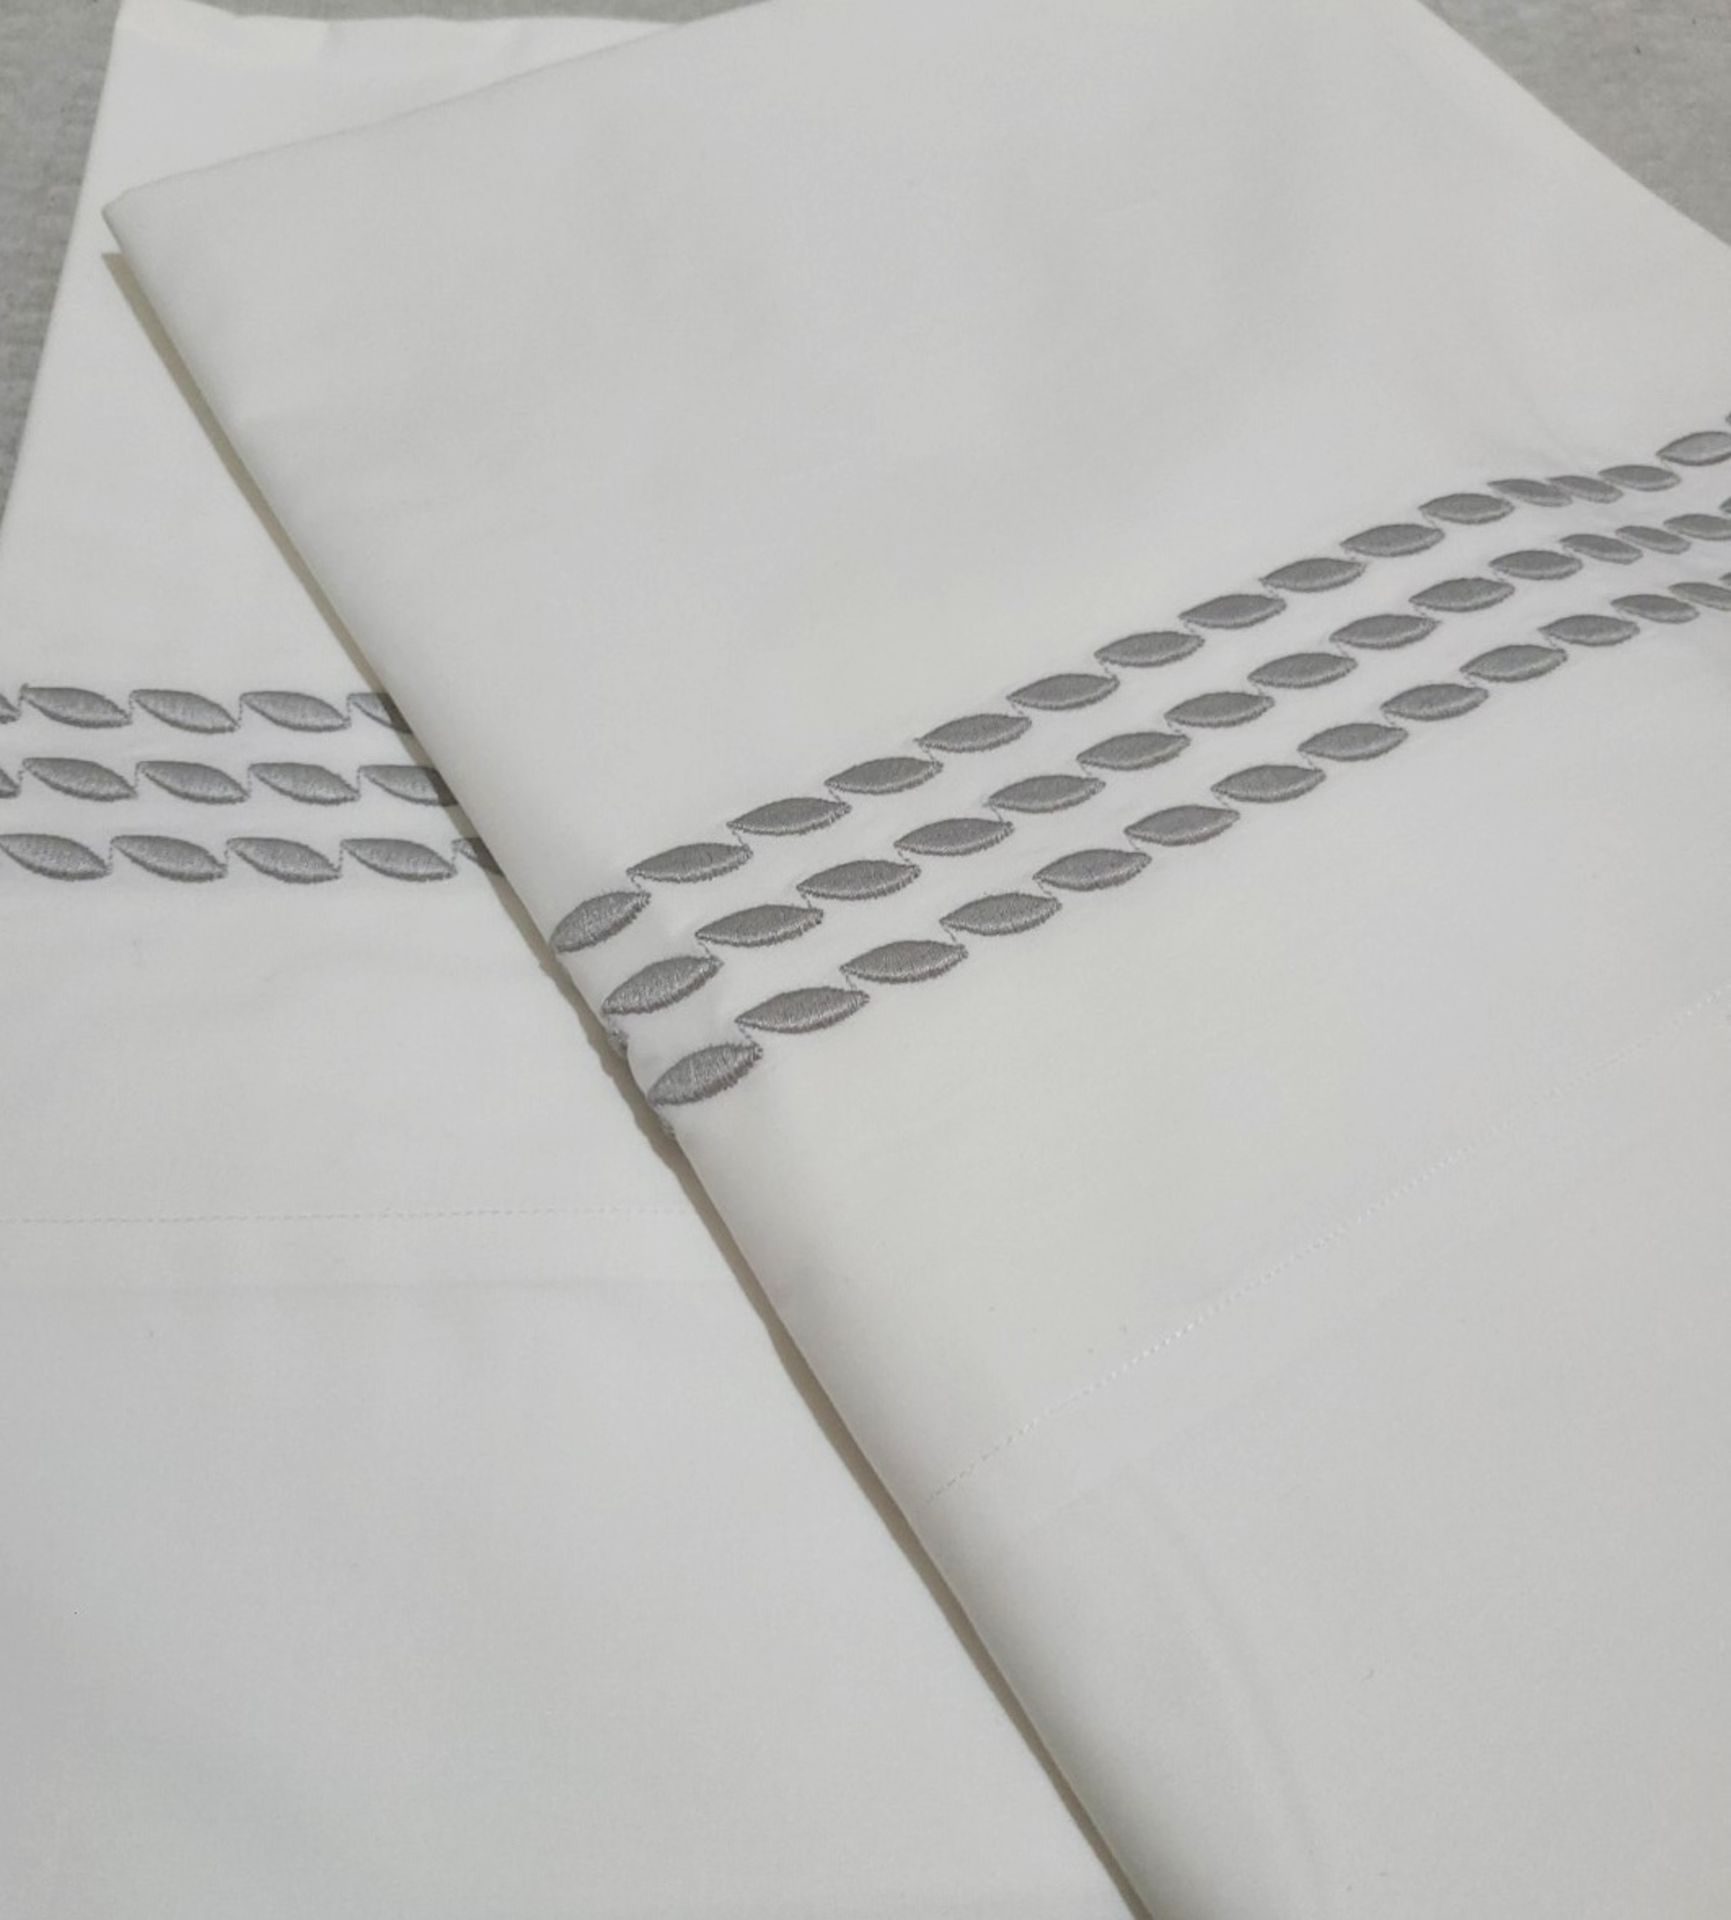 Set of 2 PRATESI Pioggia Grey Embroidery Pillow Shaw 2 50x75cm- Original Price £570.00